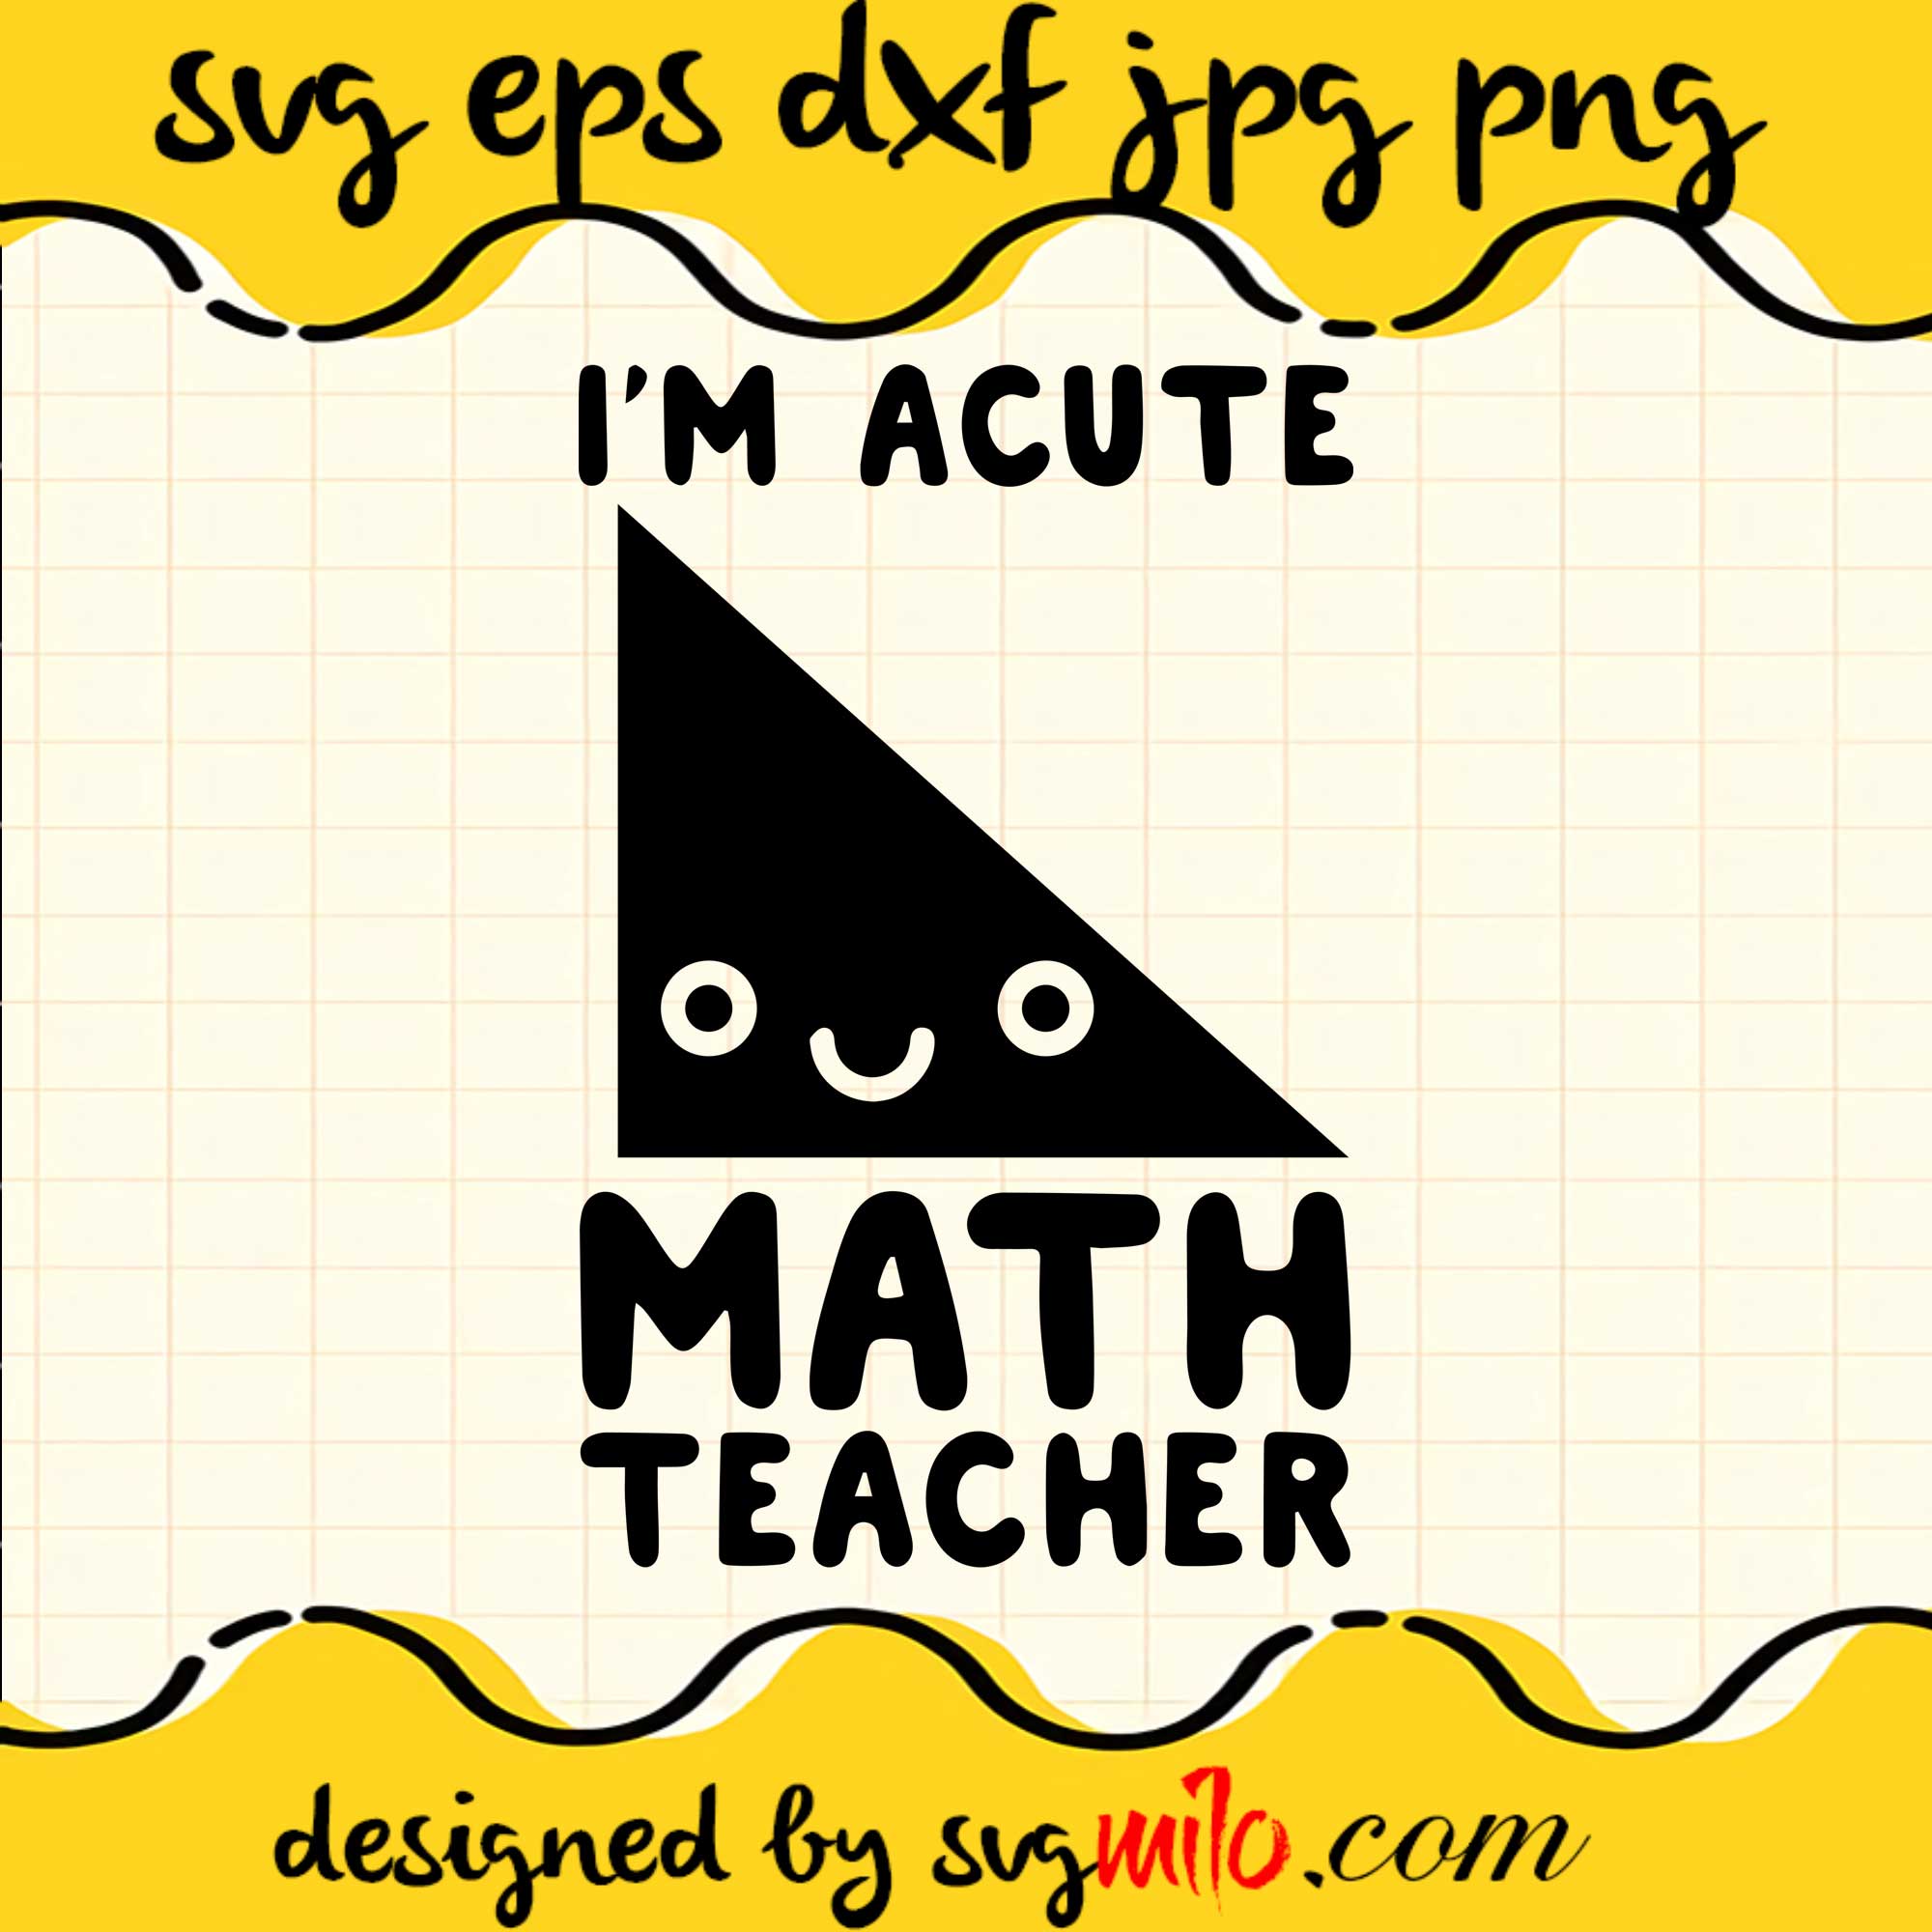 I'm Acute Math Teacher SVG PNG DXF EPS Cut Files For Cricut Silhouette,Premium quality SVG - SVGMILO